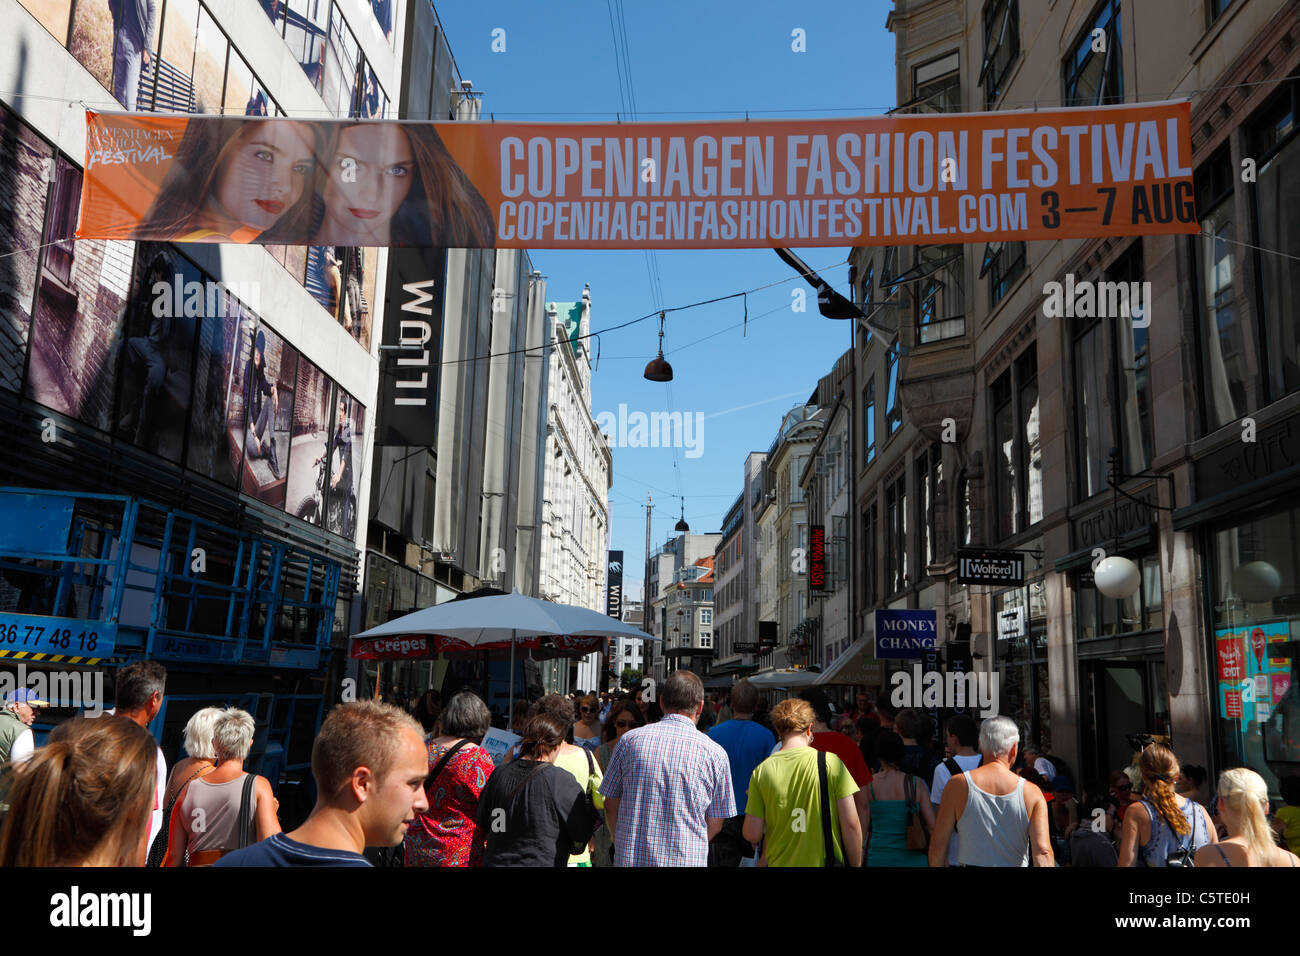 Strøget con un banner pubblicitari il Copenhagen Fashion Festival nella città di Copenhagen, Danimarca. Street view. Foto Stock